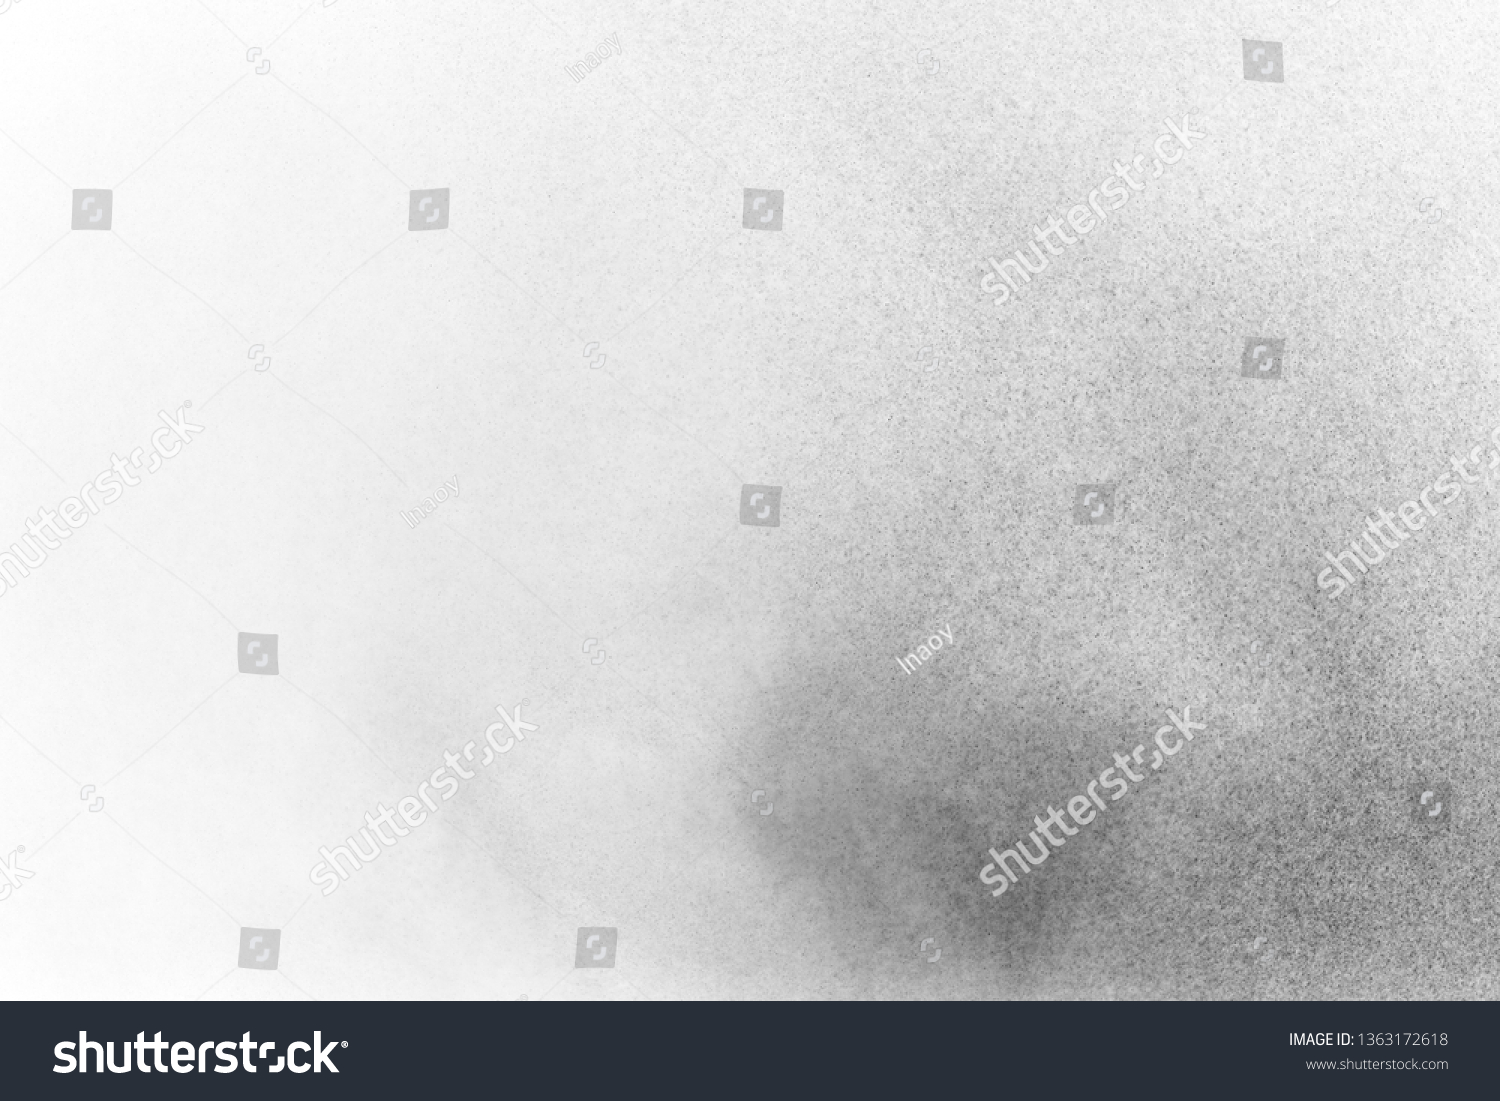 Black and white splashing powder, isolated on white background  #1363172618